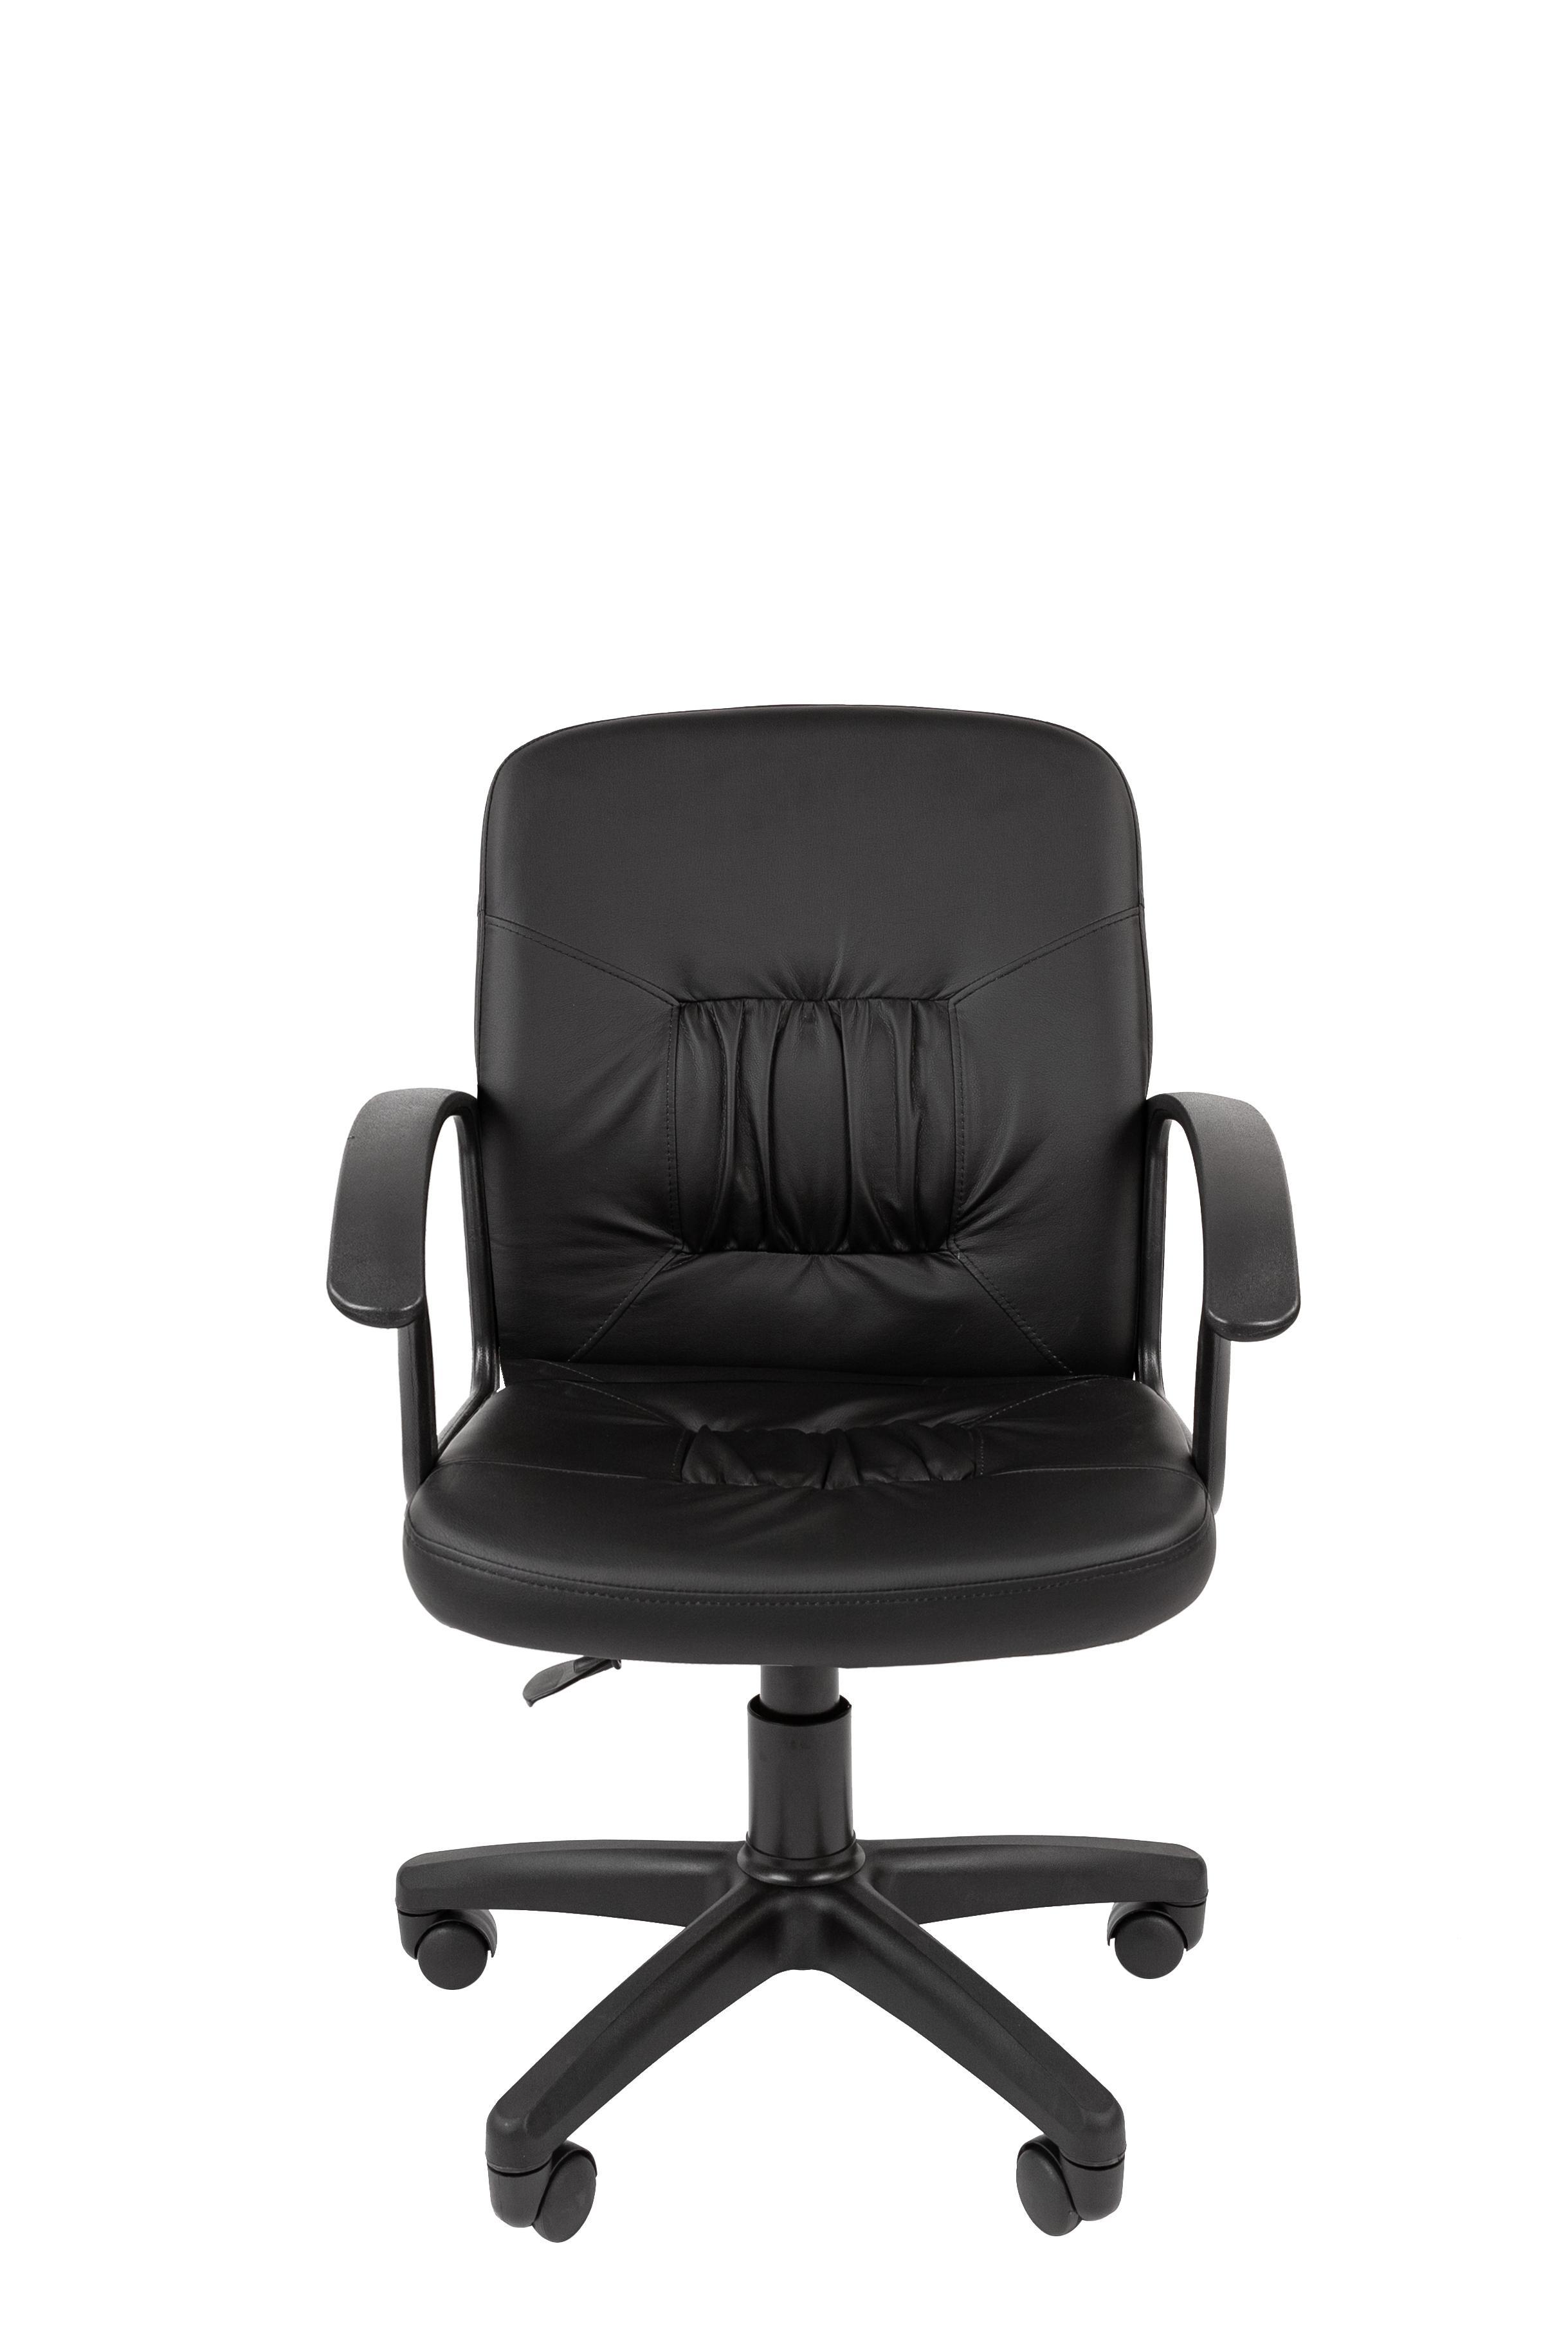  кресло Стандарт СТ-51 с низкой спинкой экокожа цвет черный .